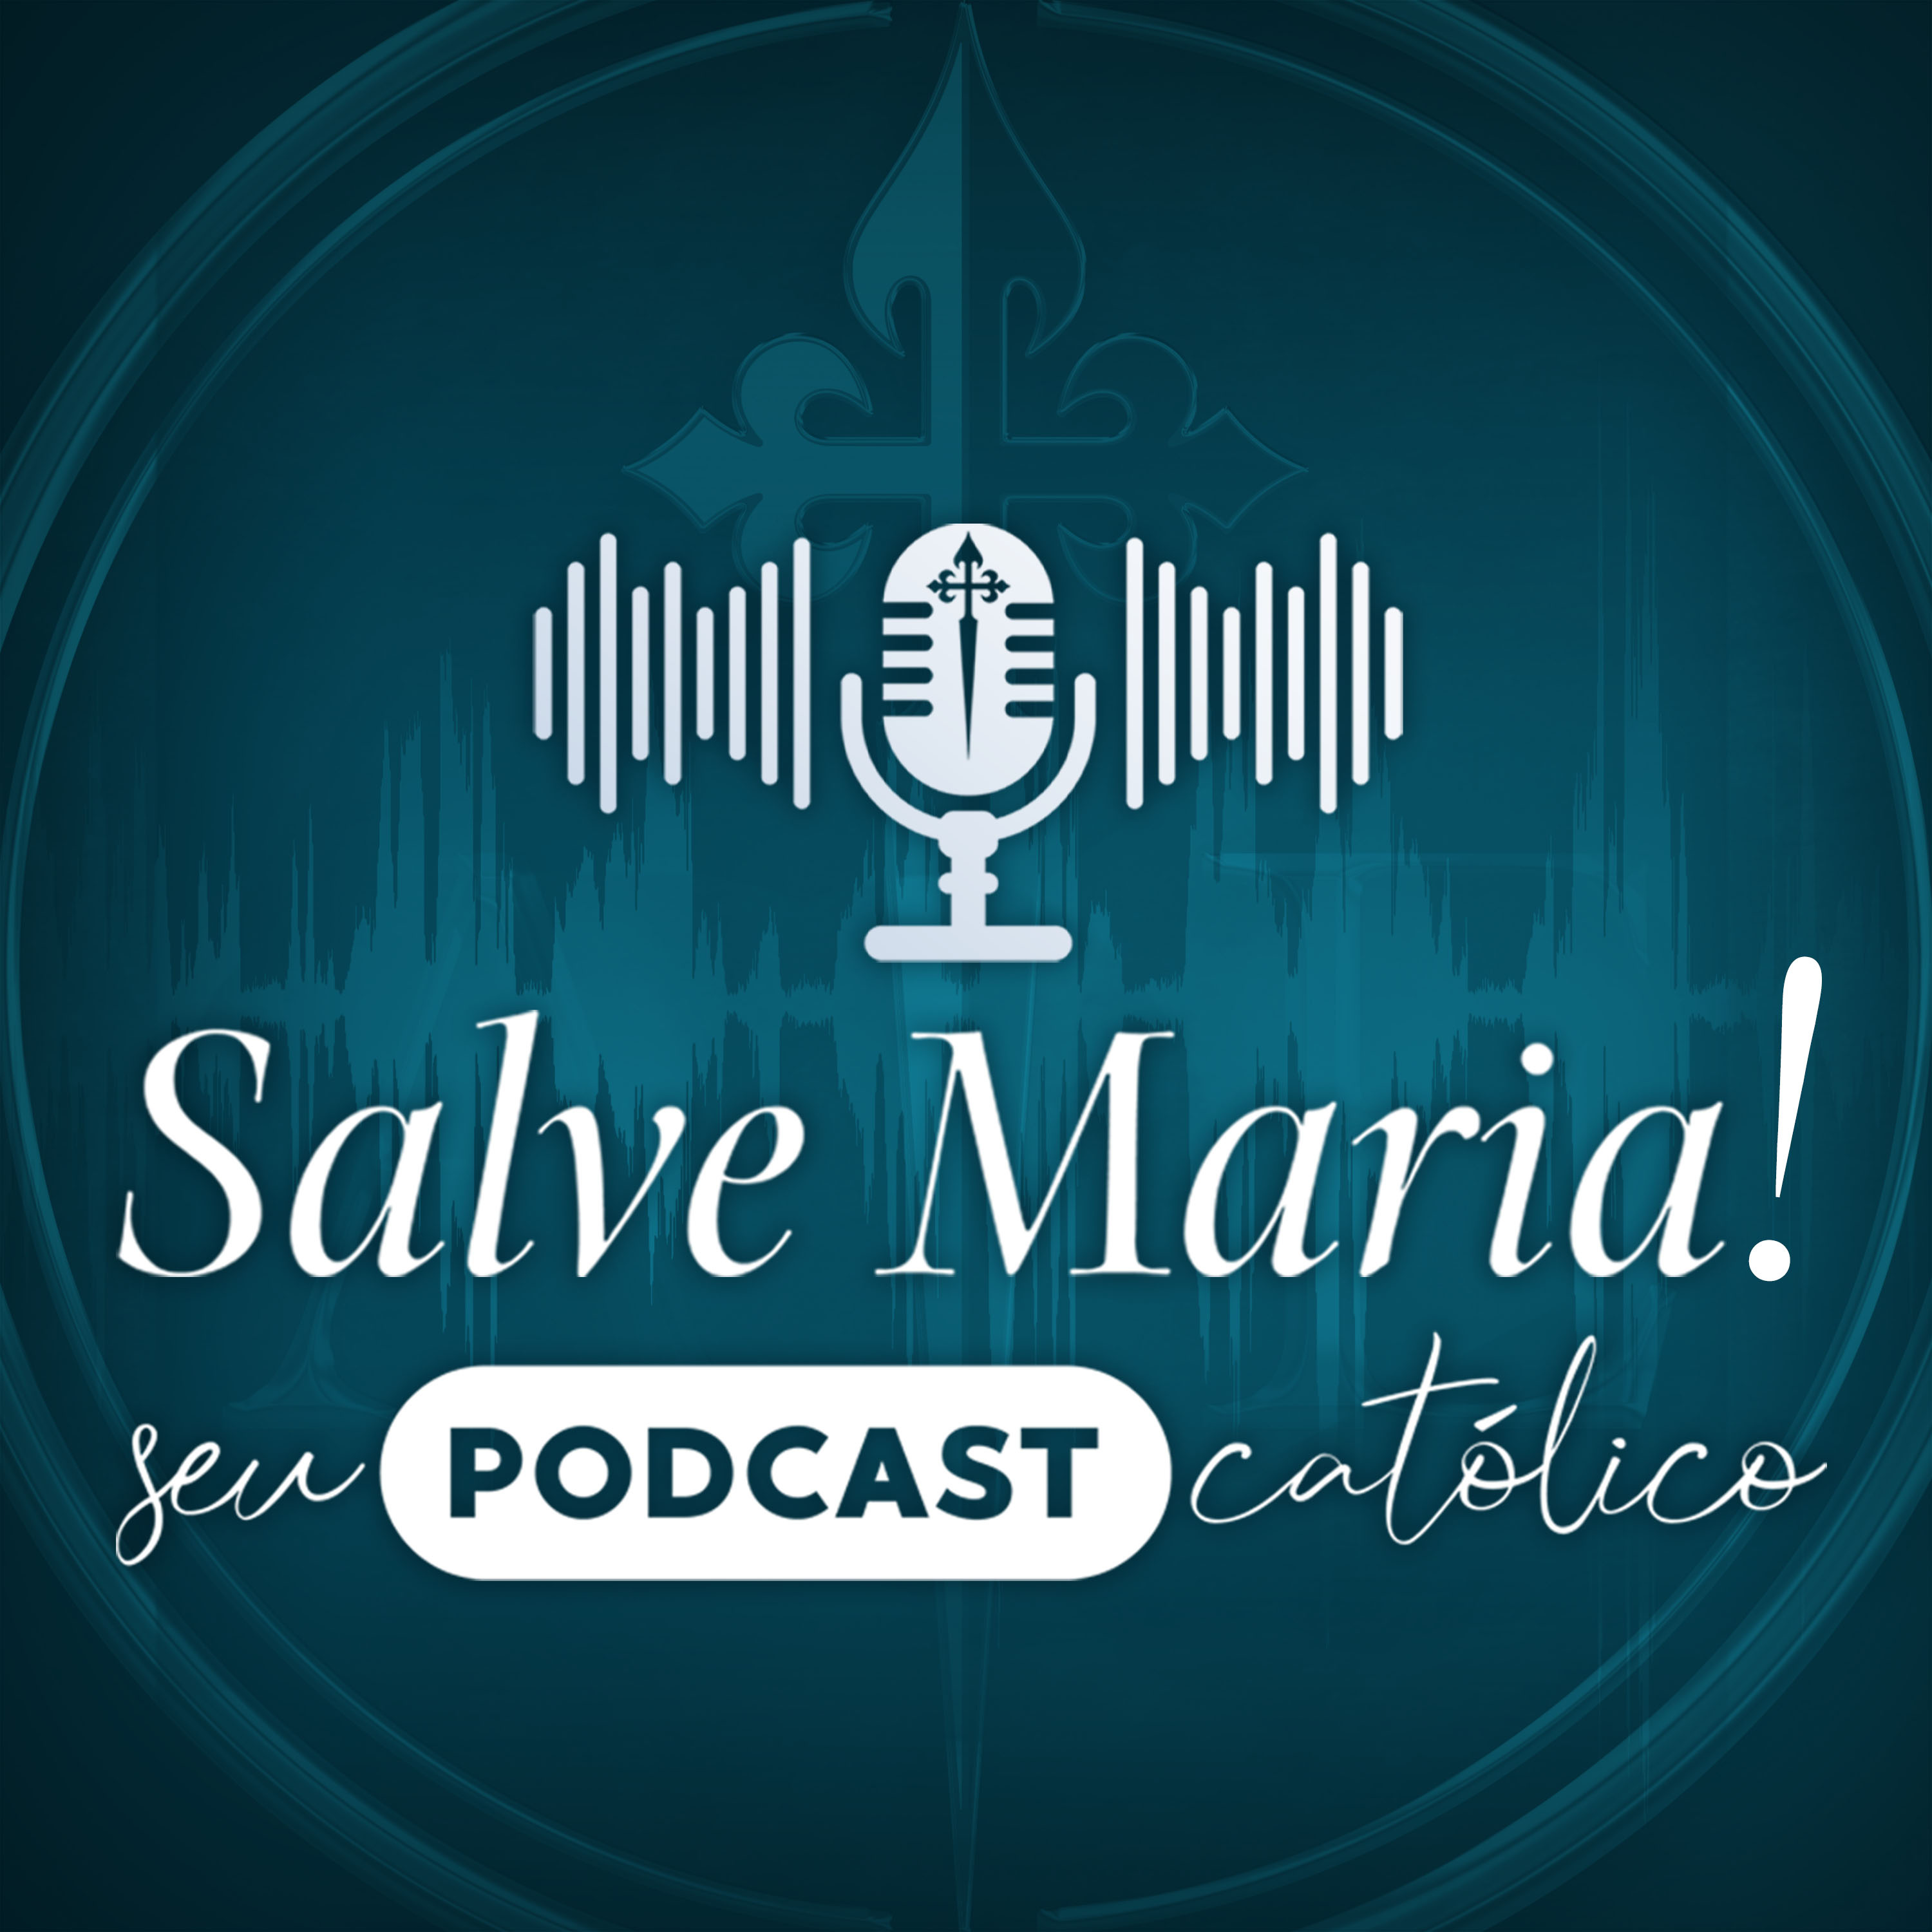 Show artwork for Salve Maria! Seu Podcast Católico